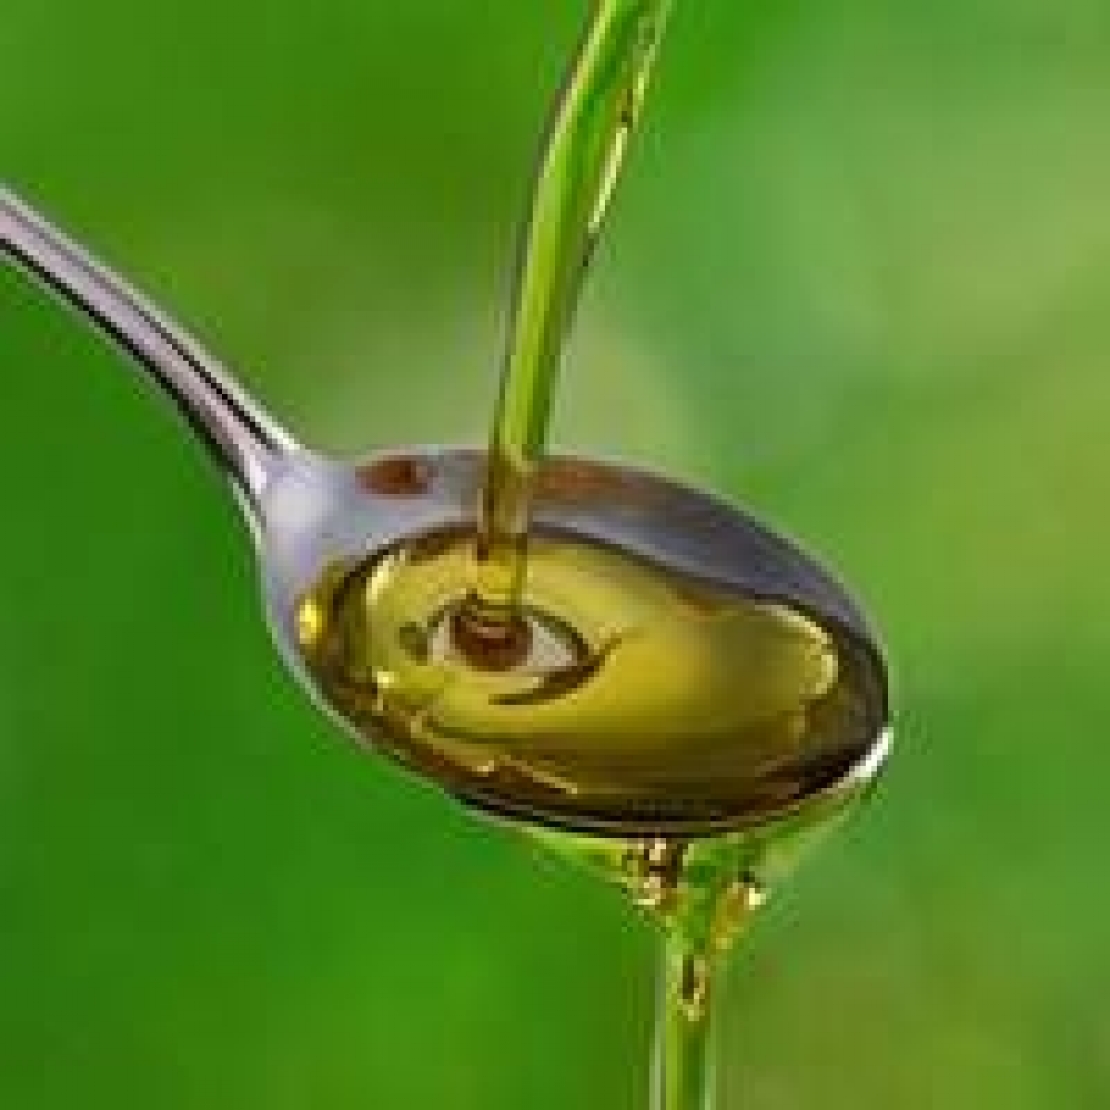 La forza di un olio extra vergine d'oliva fatto come si deve non sta solo nella bottiglia